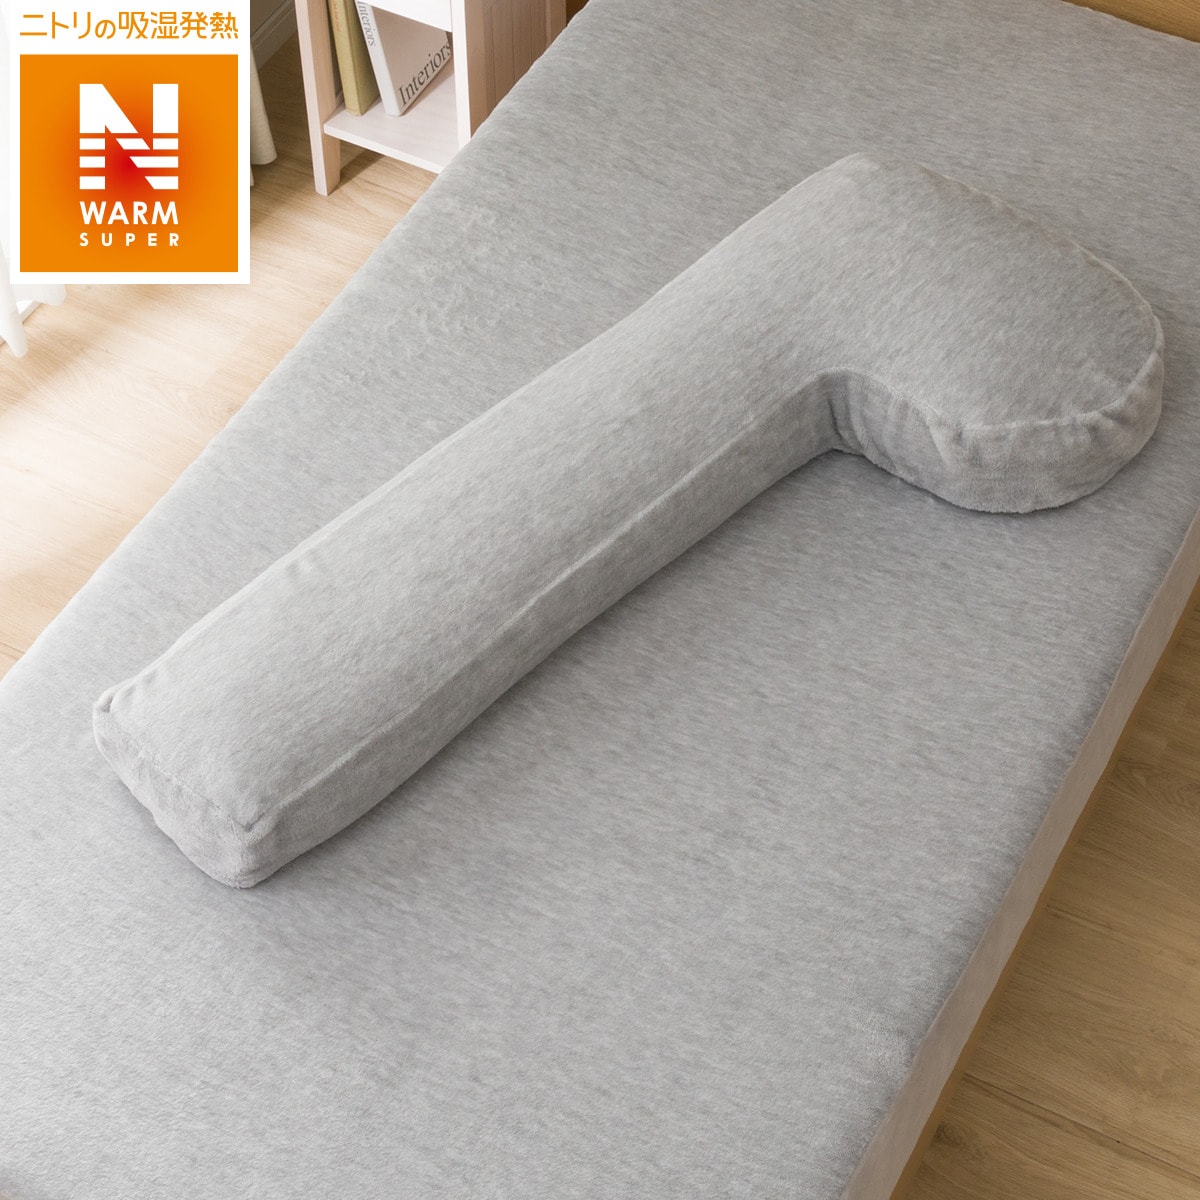 ニトリのあたまも支える抱き枕用カバー(NWSPiGY)   【1年保証】(布団・寝具)